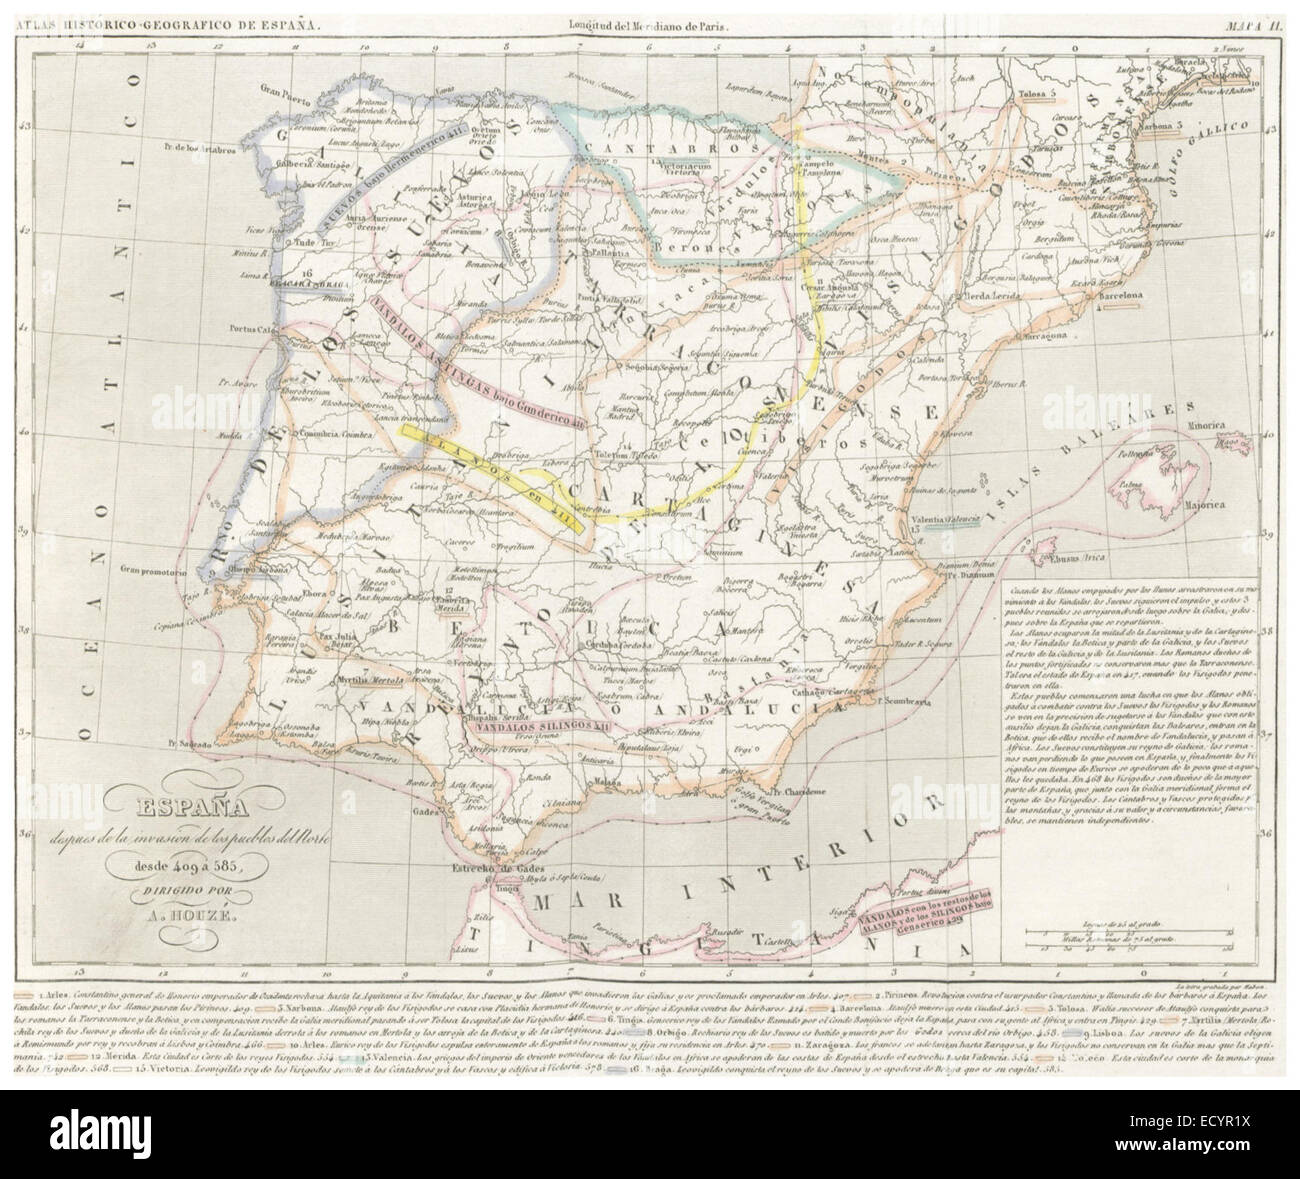 CHAO(1849) Atlas Historico Geografico de España - Mapa 2 (409-585 Stock  Photo - Alamy